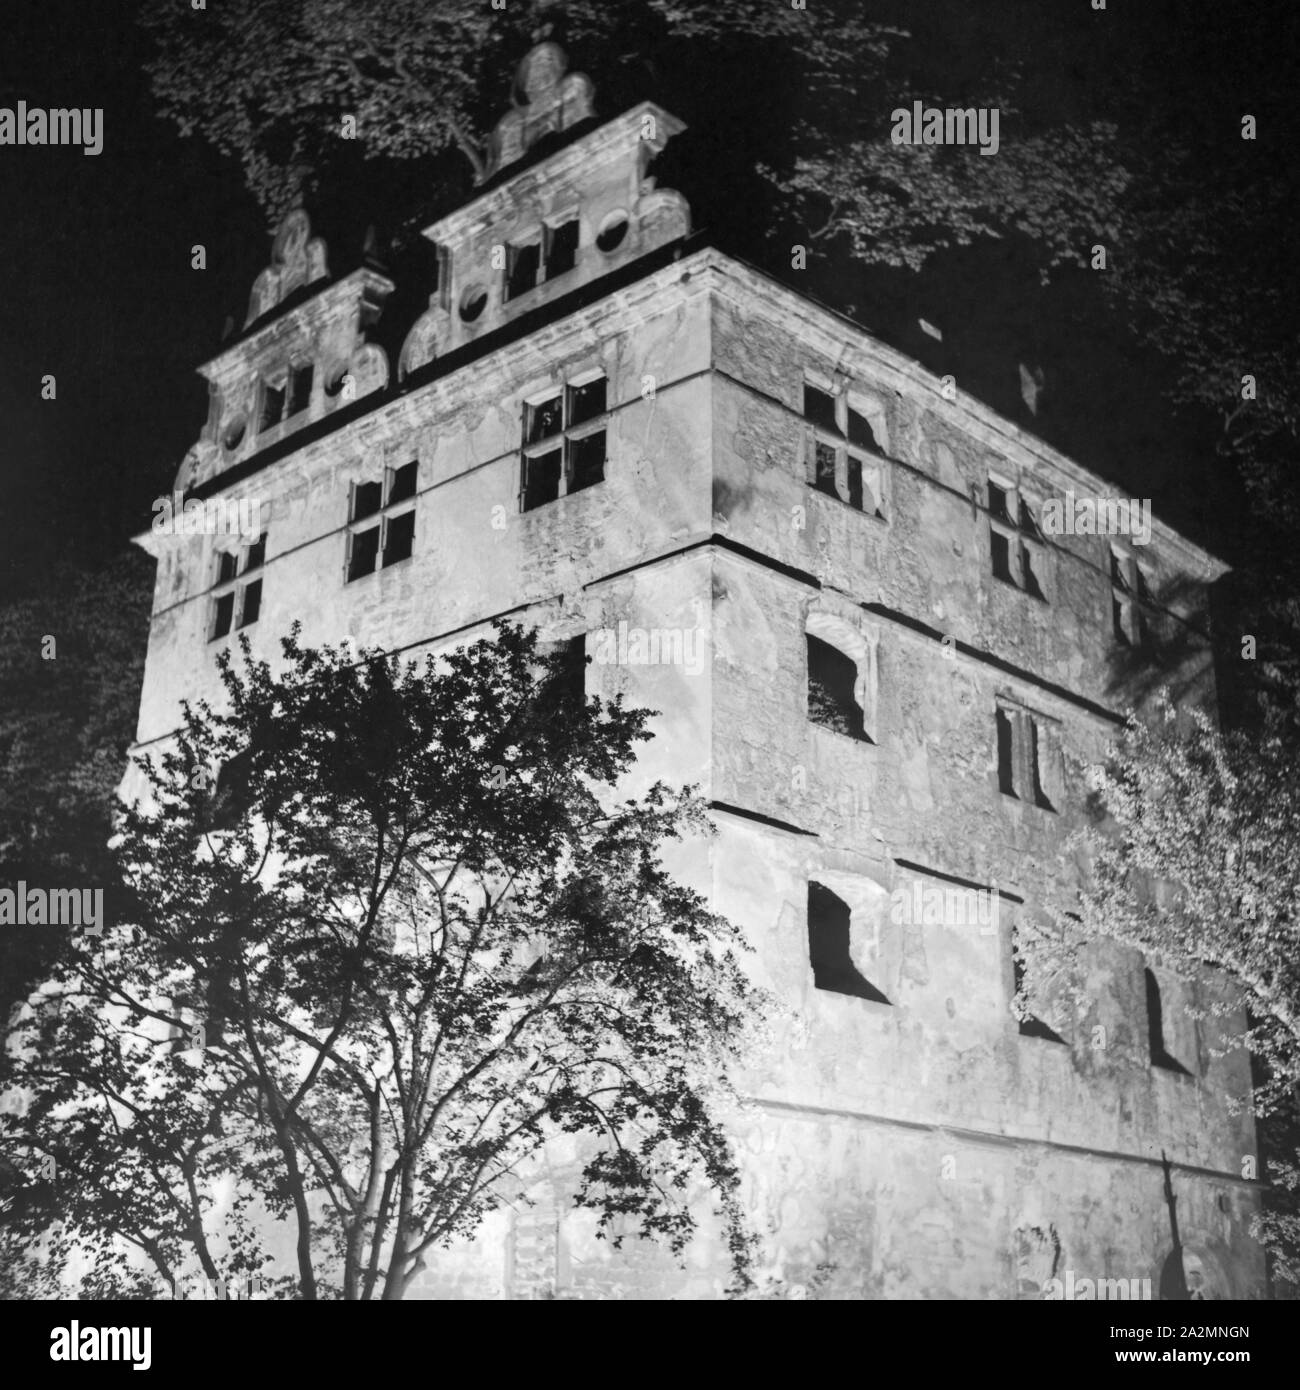 Kloster Hirsau im Schwarzwald bei Nacht, Deutschland 1930er Jahre. Hirsau monastery at Black Forest by night, Germany 1930s. Stock Photo